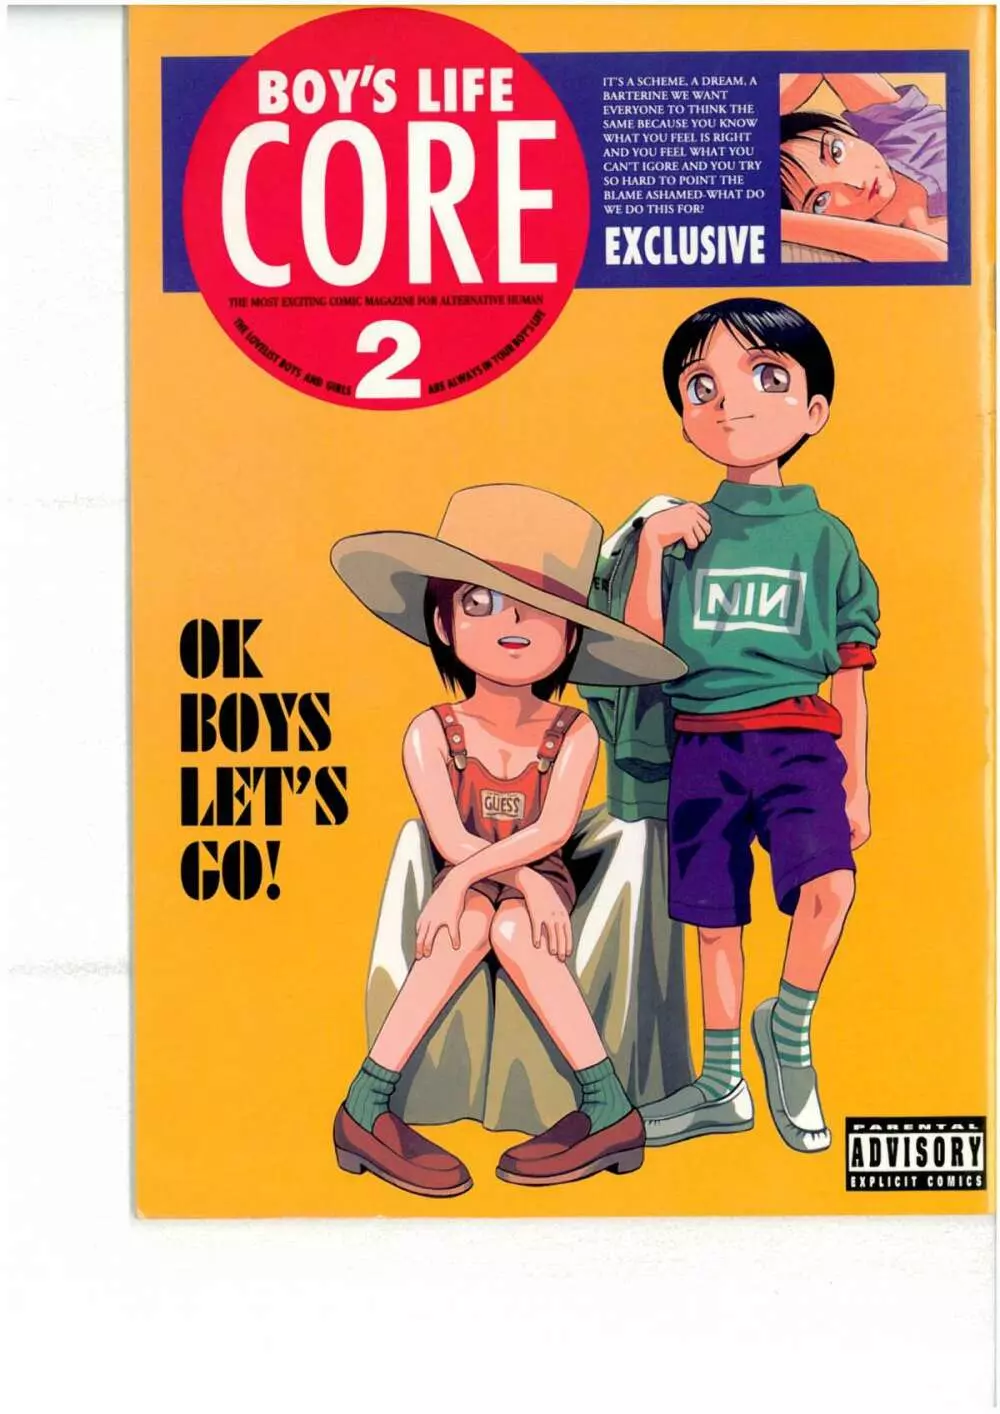 BOY’S LIFE CORE 2